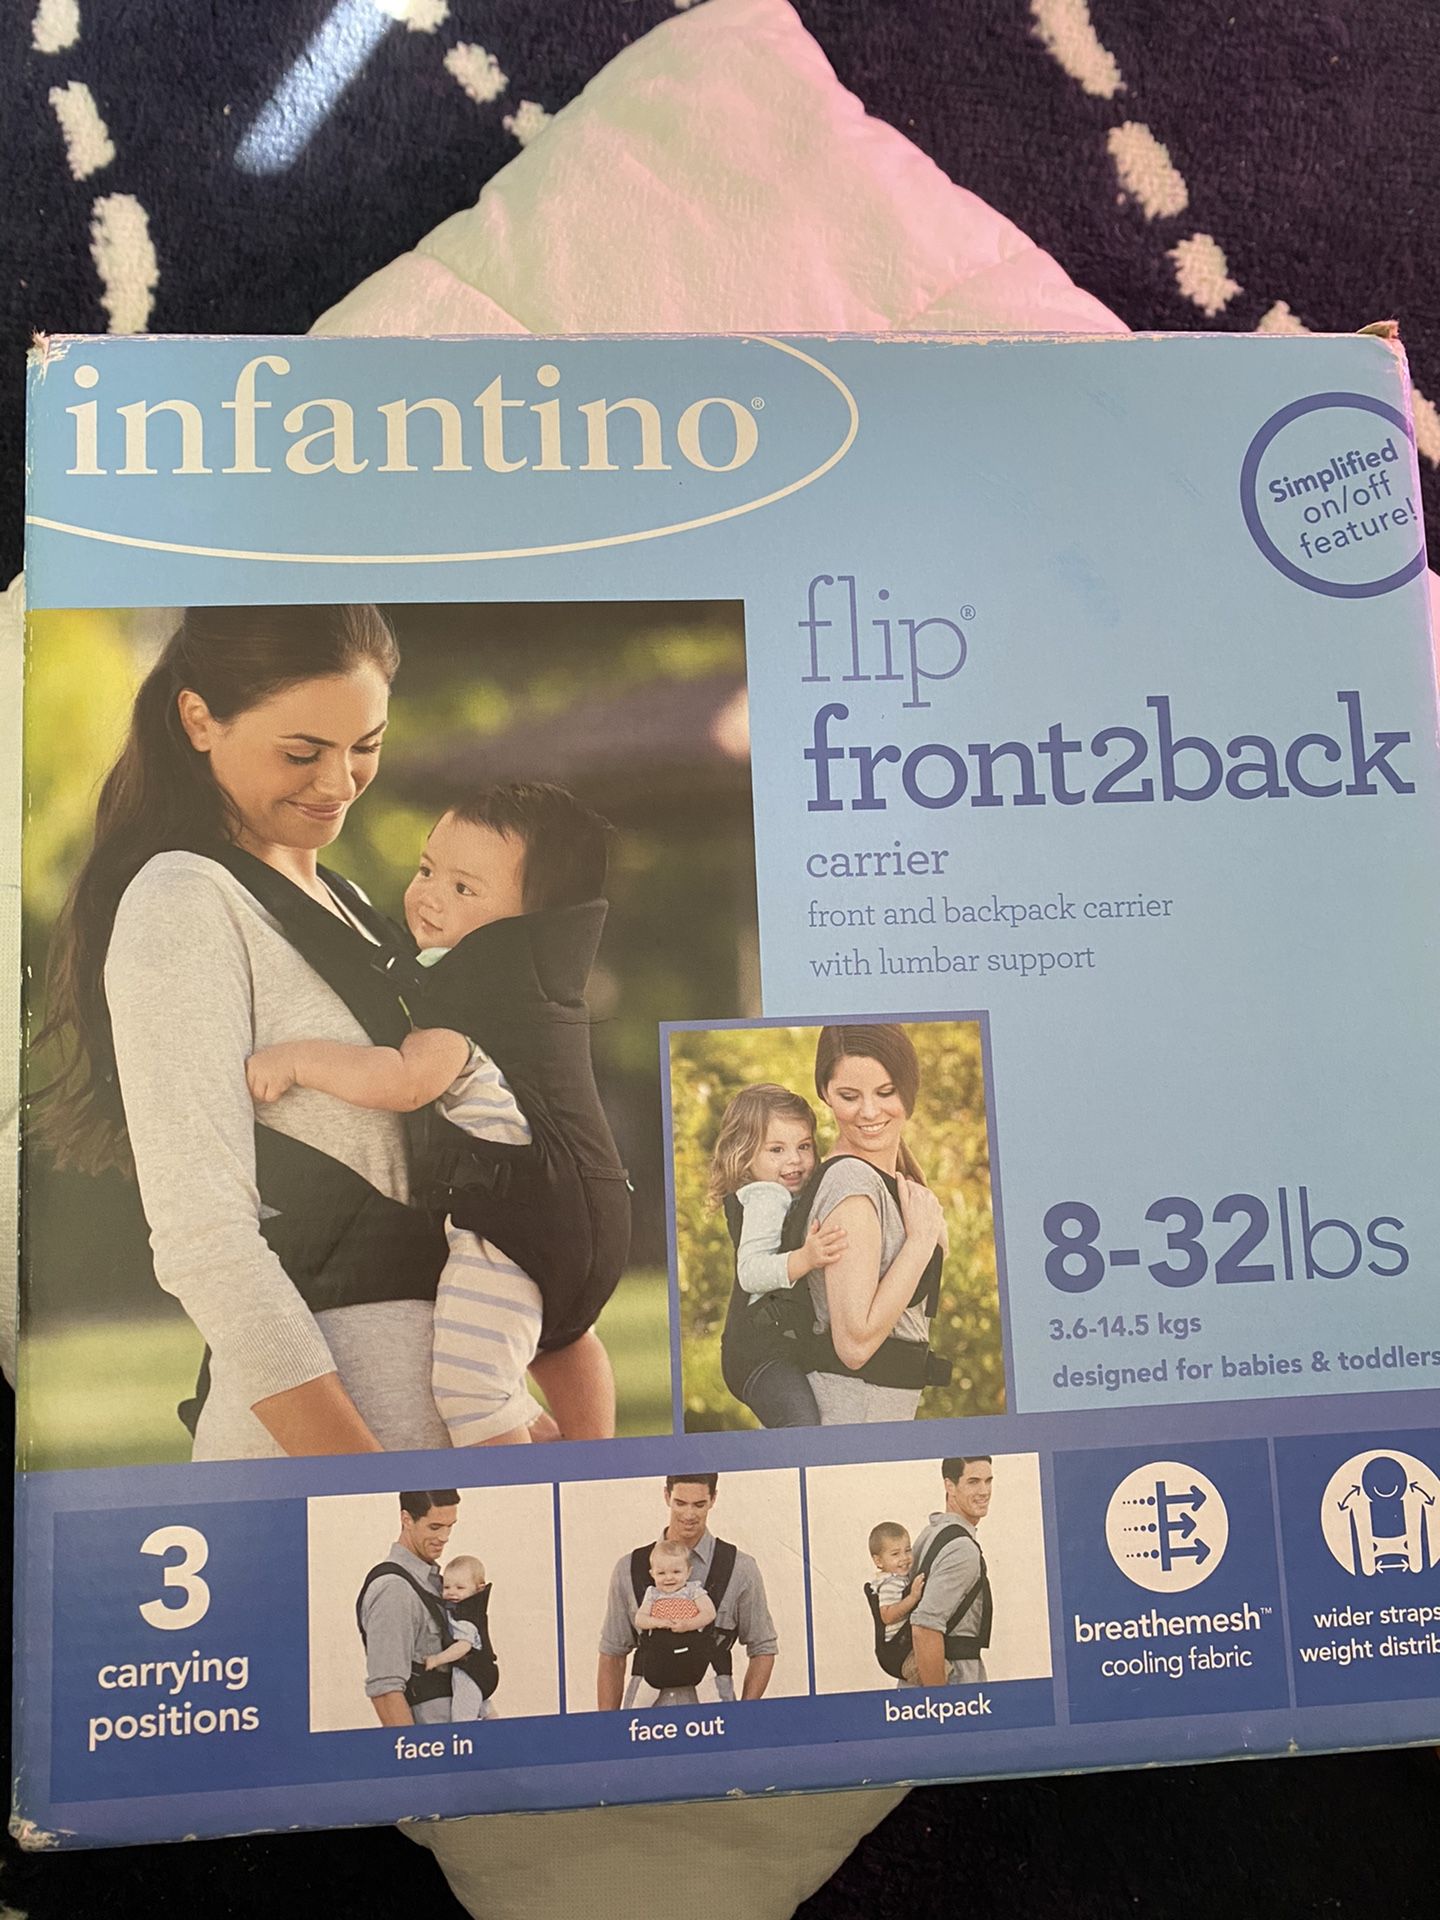 Infant into Flip front2back